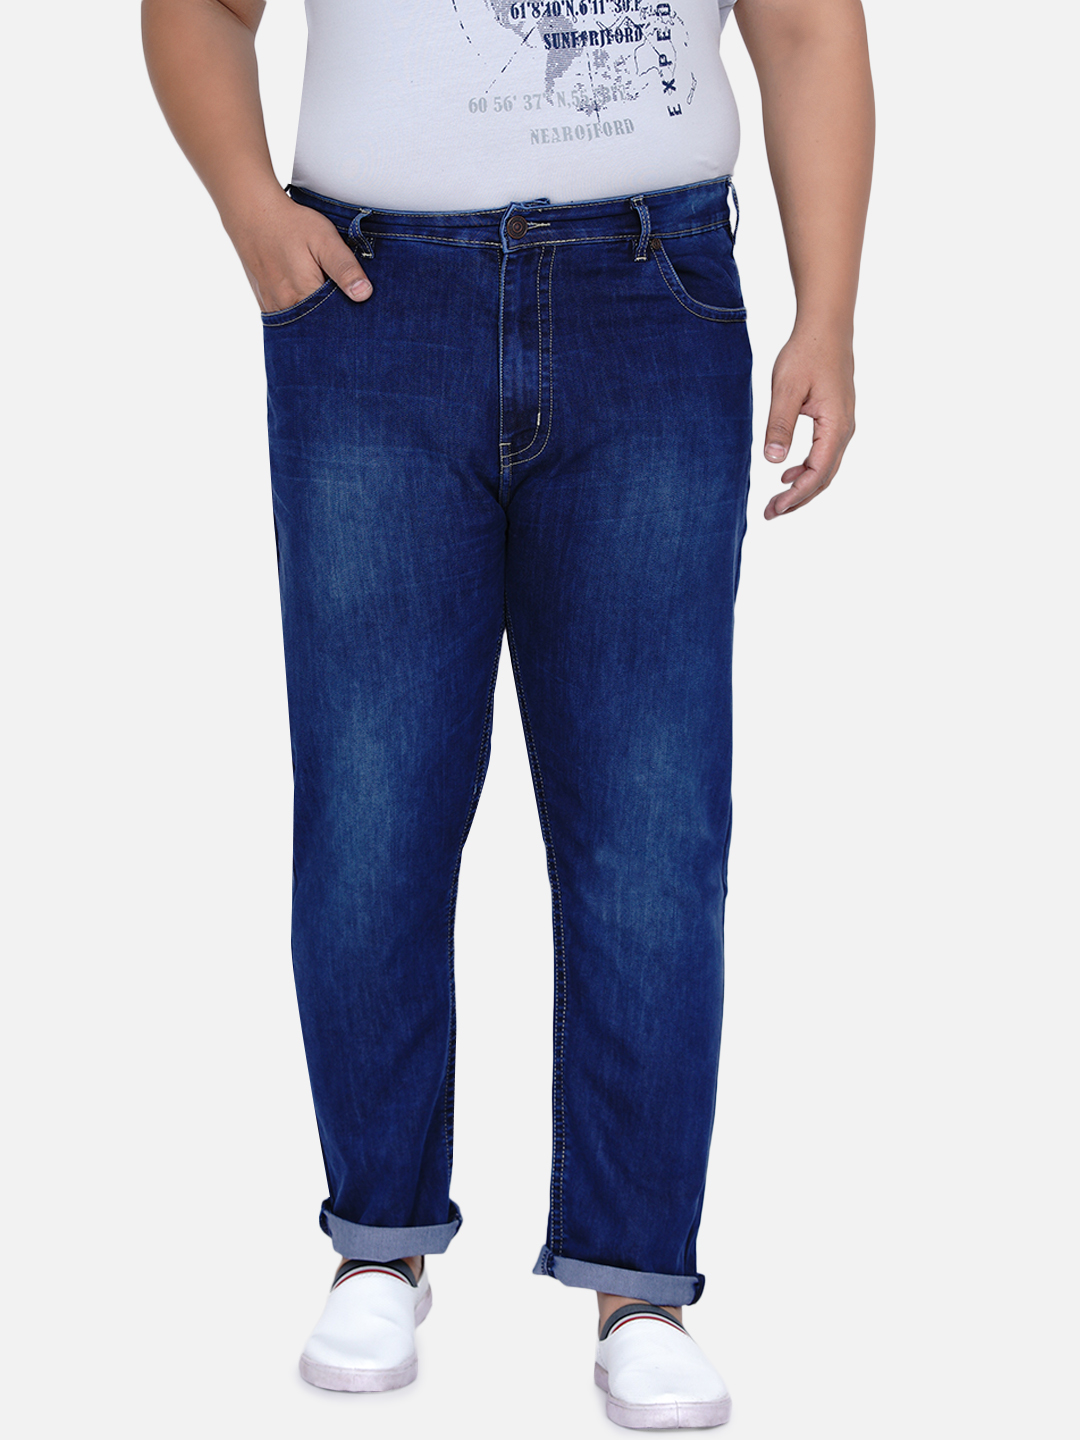 affordables/jeans/JPJ2016/jpj2016-3.jpg